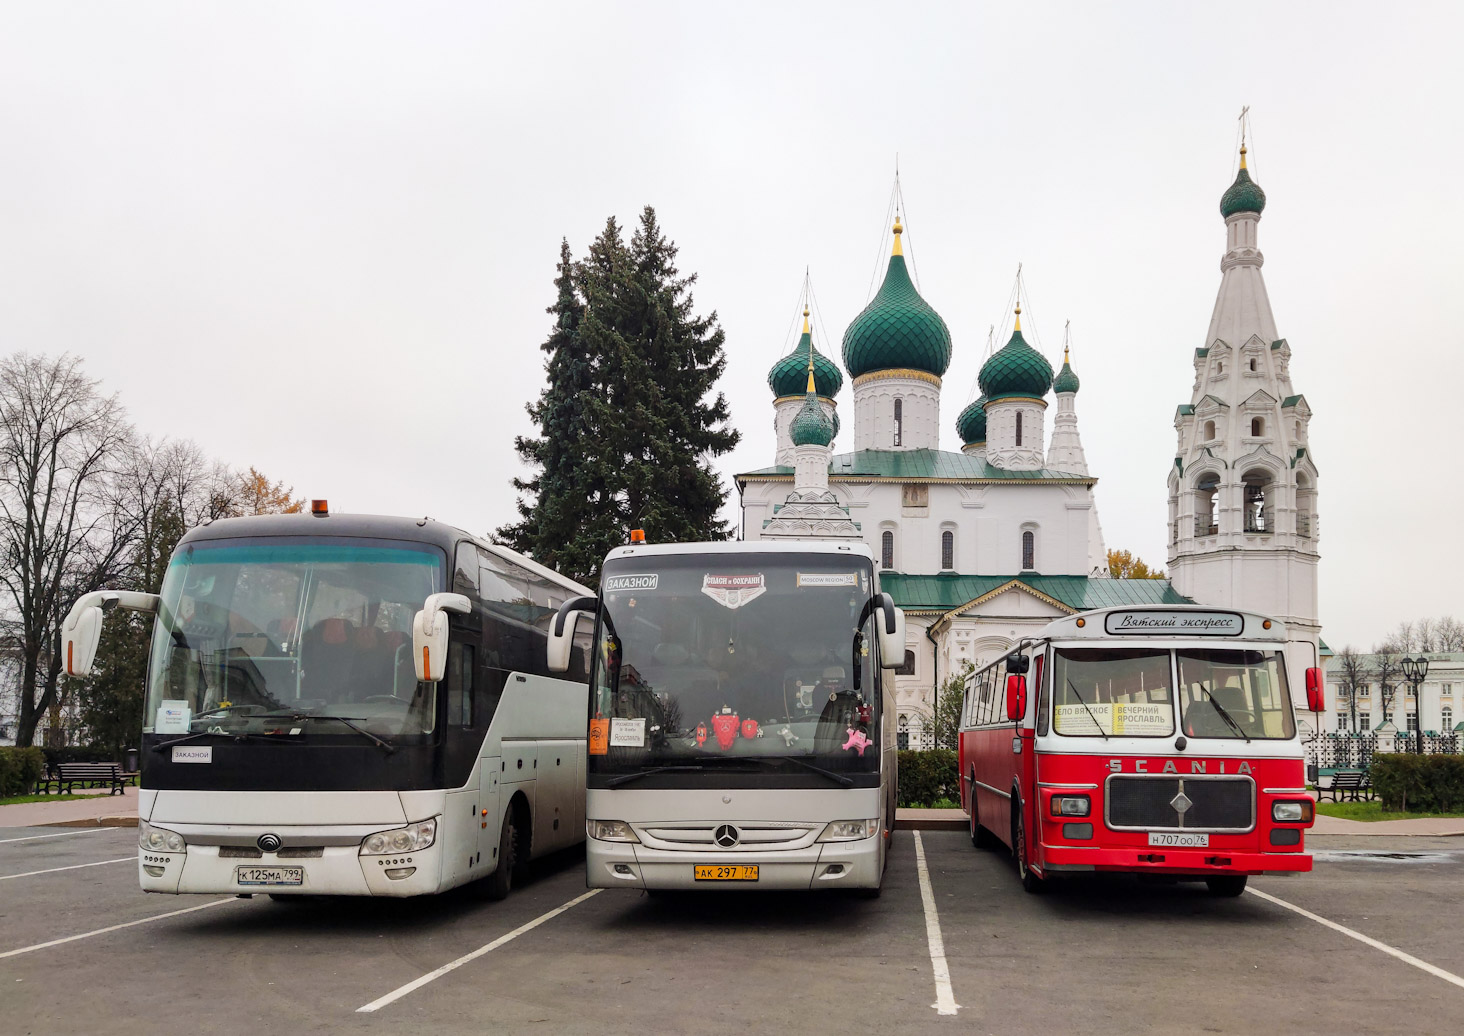 Moskau, Mercedes-Benz Tourismo II 15RHD Nr. АК 297 77; Yaroslavl region, Repstad Nr. Н 707 ОО 76